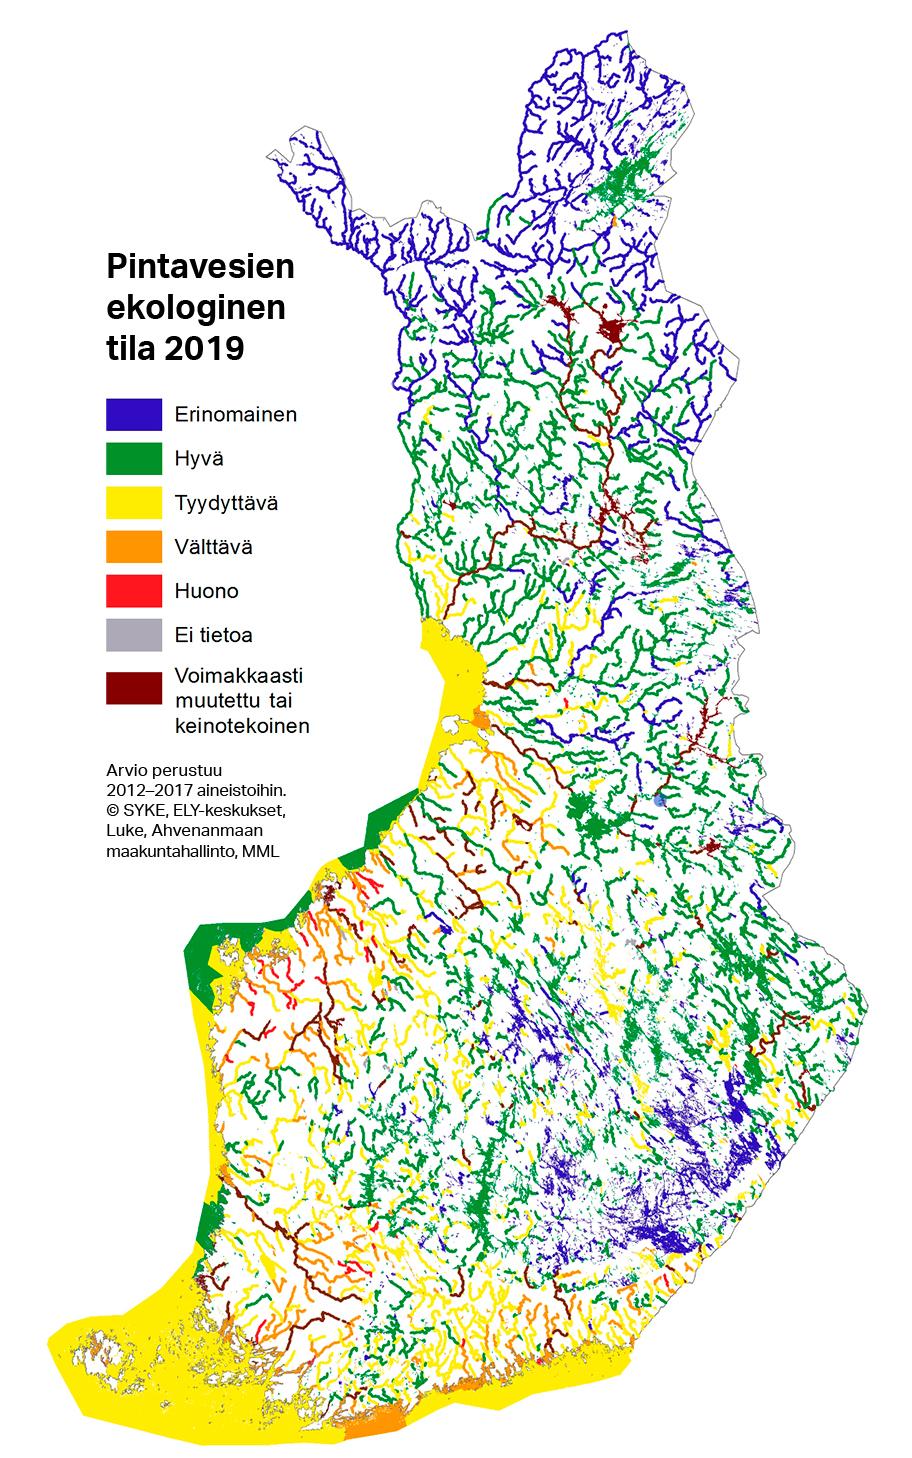 Suomen kartta, johon on piirretty vesialueet ja annettu kullekin niiden pintavesien ekologista tilaa symboloiva väri. Eri värit ovat vaihtelevasti edustettuina koko Suomen alueella.